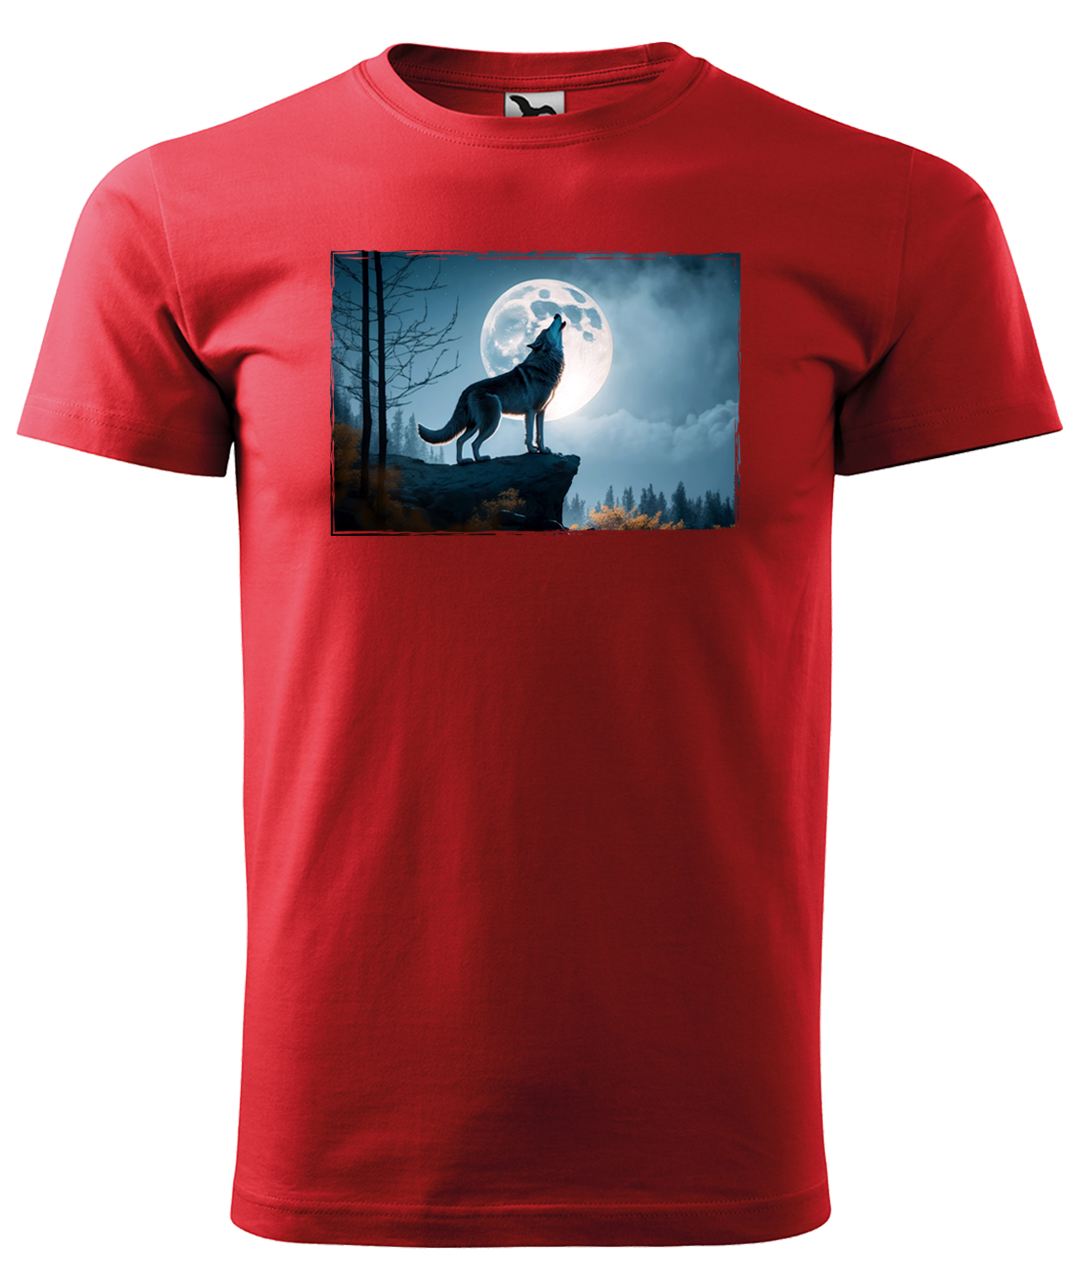 Dětské tričko s vlkem - Vyjící vlk Velikost: 12 let / 158 cm, Barva: Červená (07)